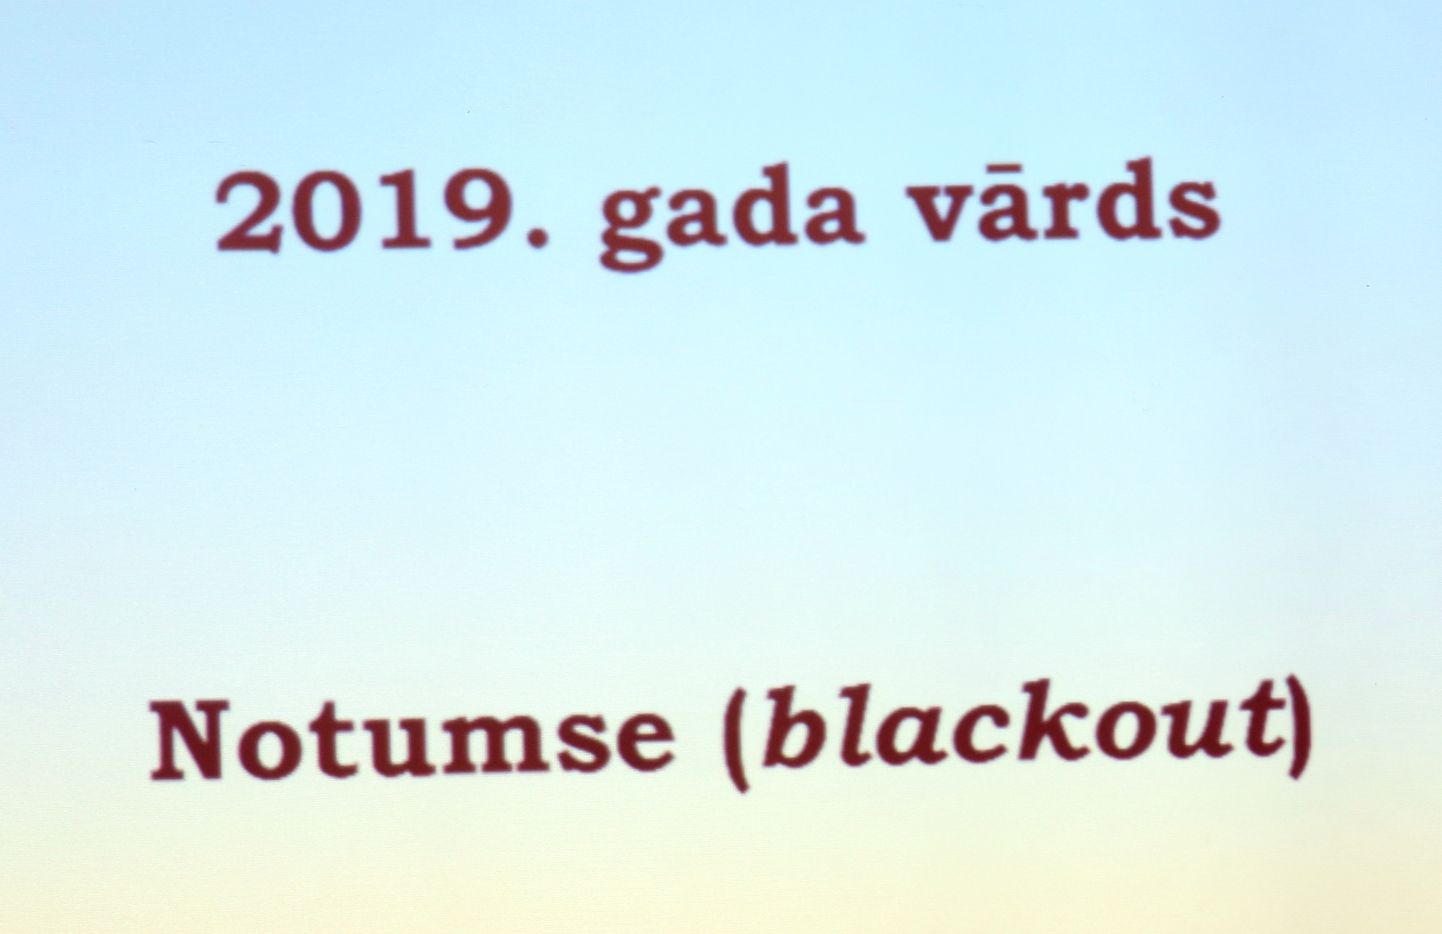 Rīgas Latviešu biedrības namā notiek pasākums, kurā paziņo "2019. gada vārdu, nevārdu un spārnoto teicienu".